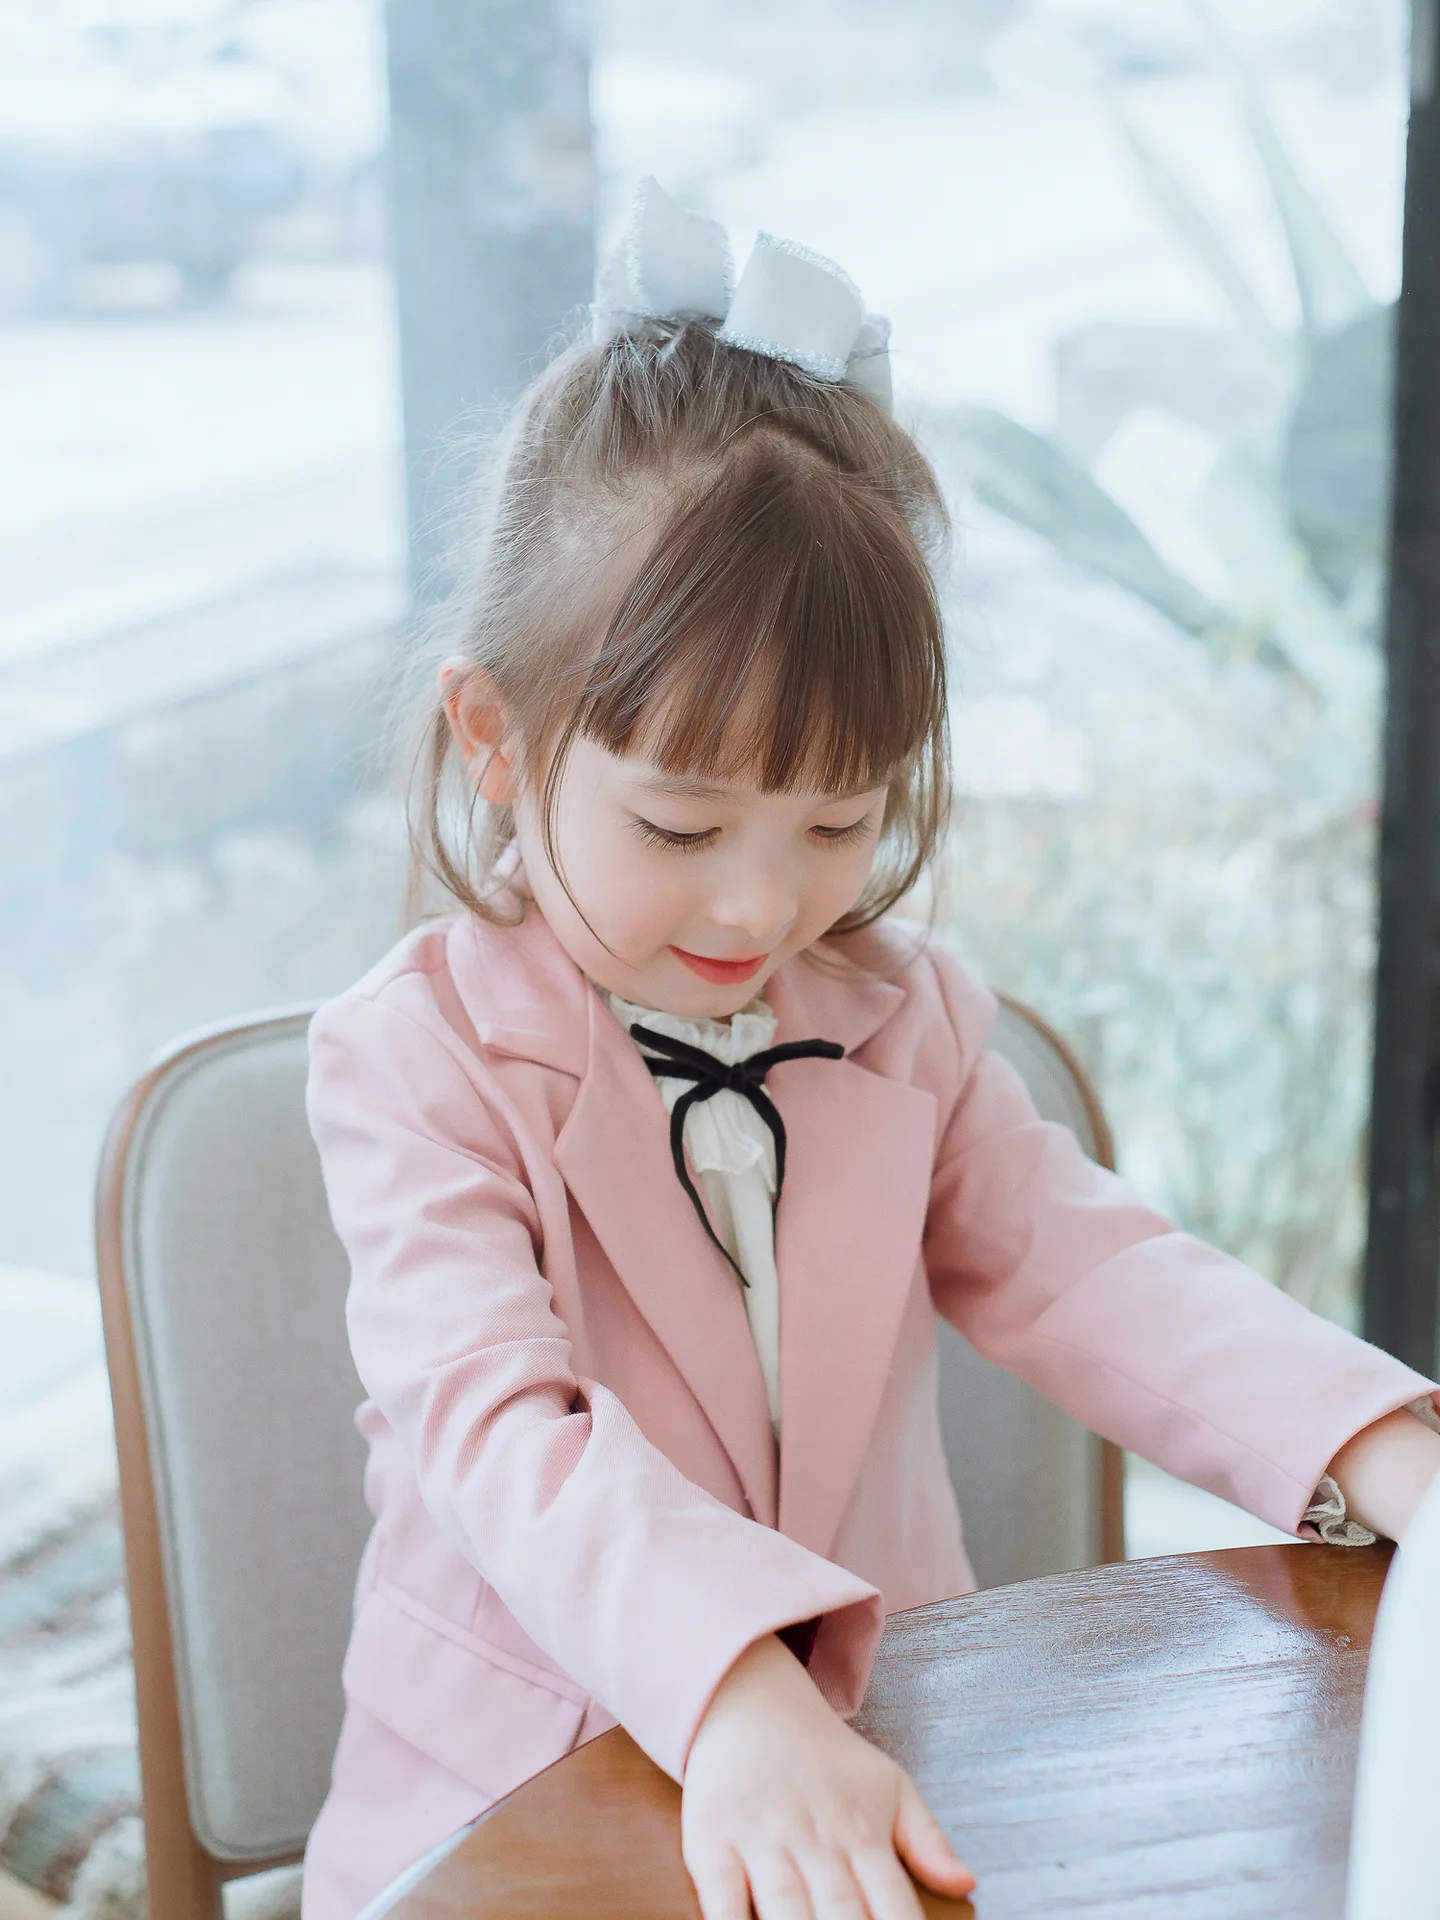 Bongawn/пальто для девочек осенне-зимняя модная повседневная одежда розового цвета с героями мультфильмов для родителей и детей от 24 месяцев до 10 лет, пальто на одной пуговице для взрослых, размеры s, M, l